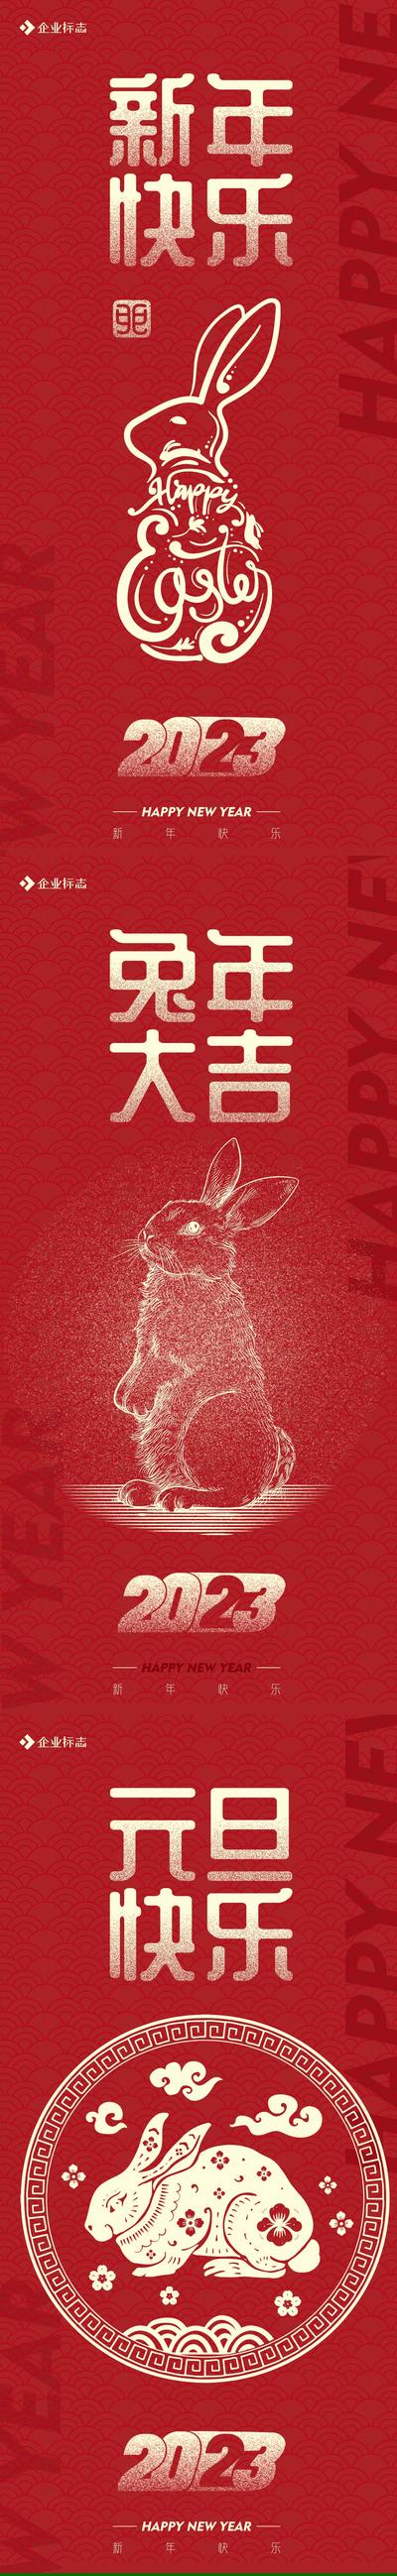 南门网 海报  公历节日  2023 兔年 新年快乐 元旦快乐 新年 元旦  红金  兔子